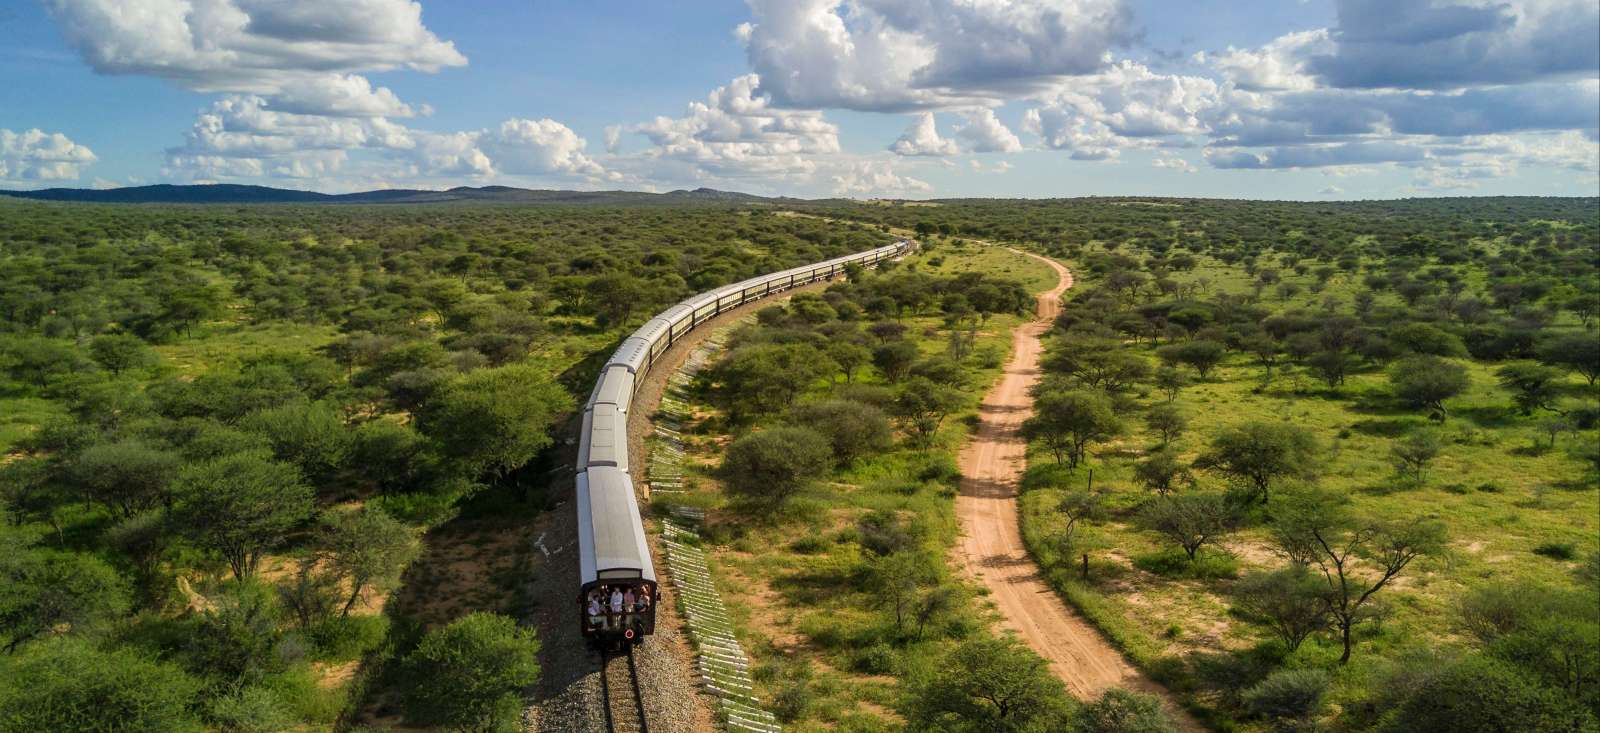 Safari - Namibie : Shongololo, un train pour l\'aventure